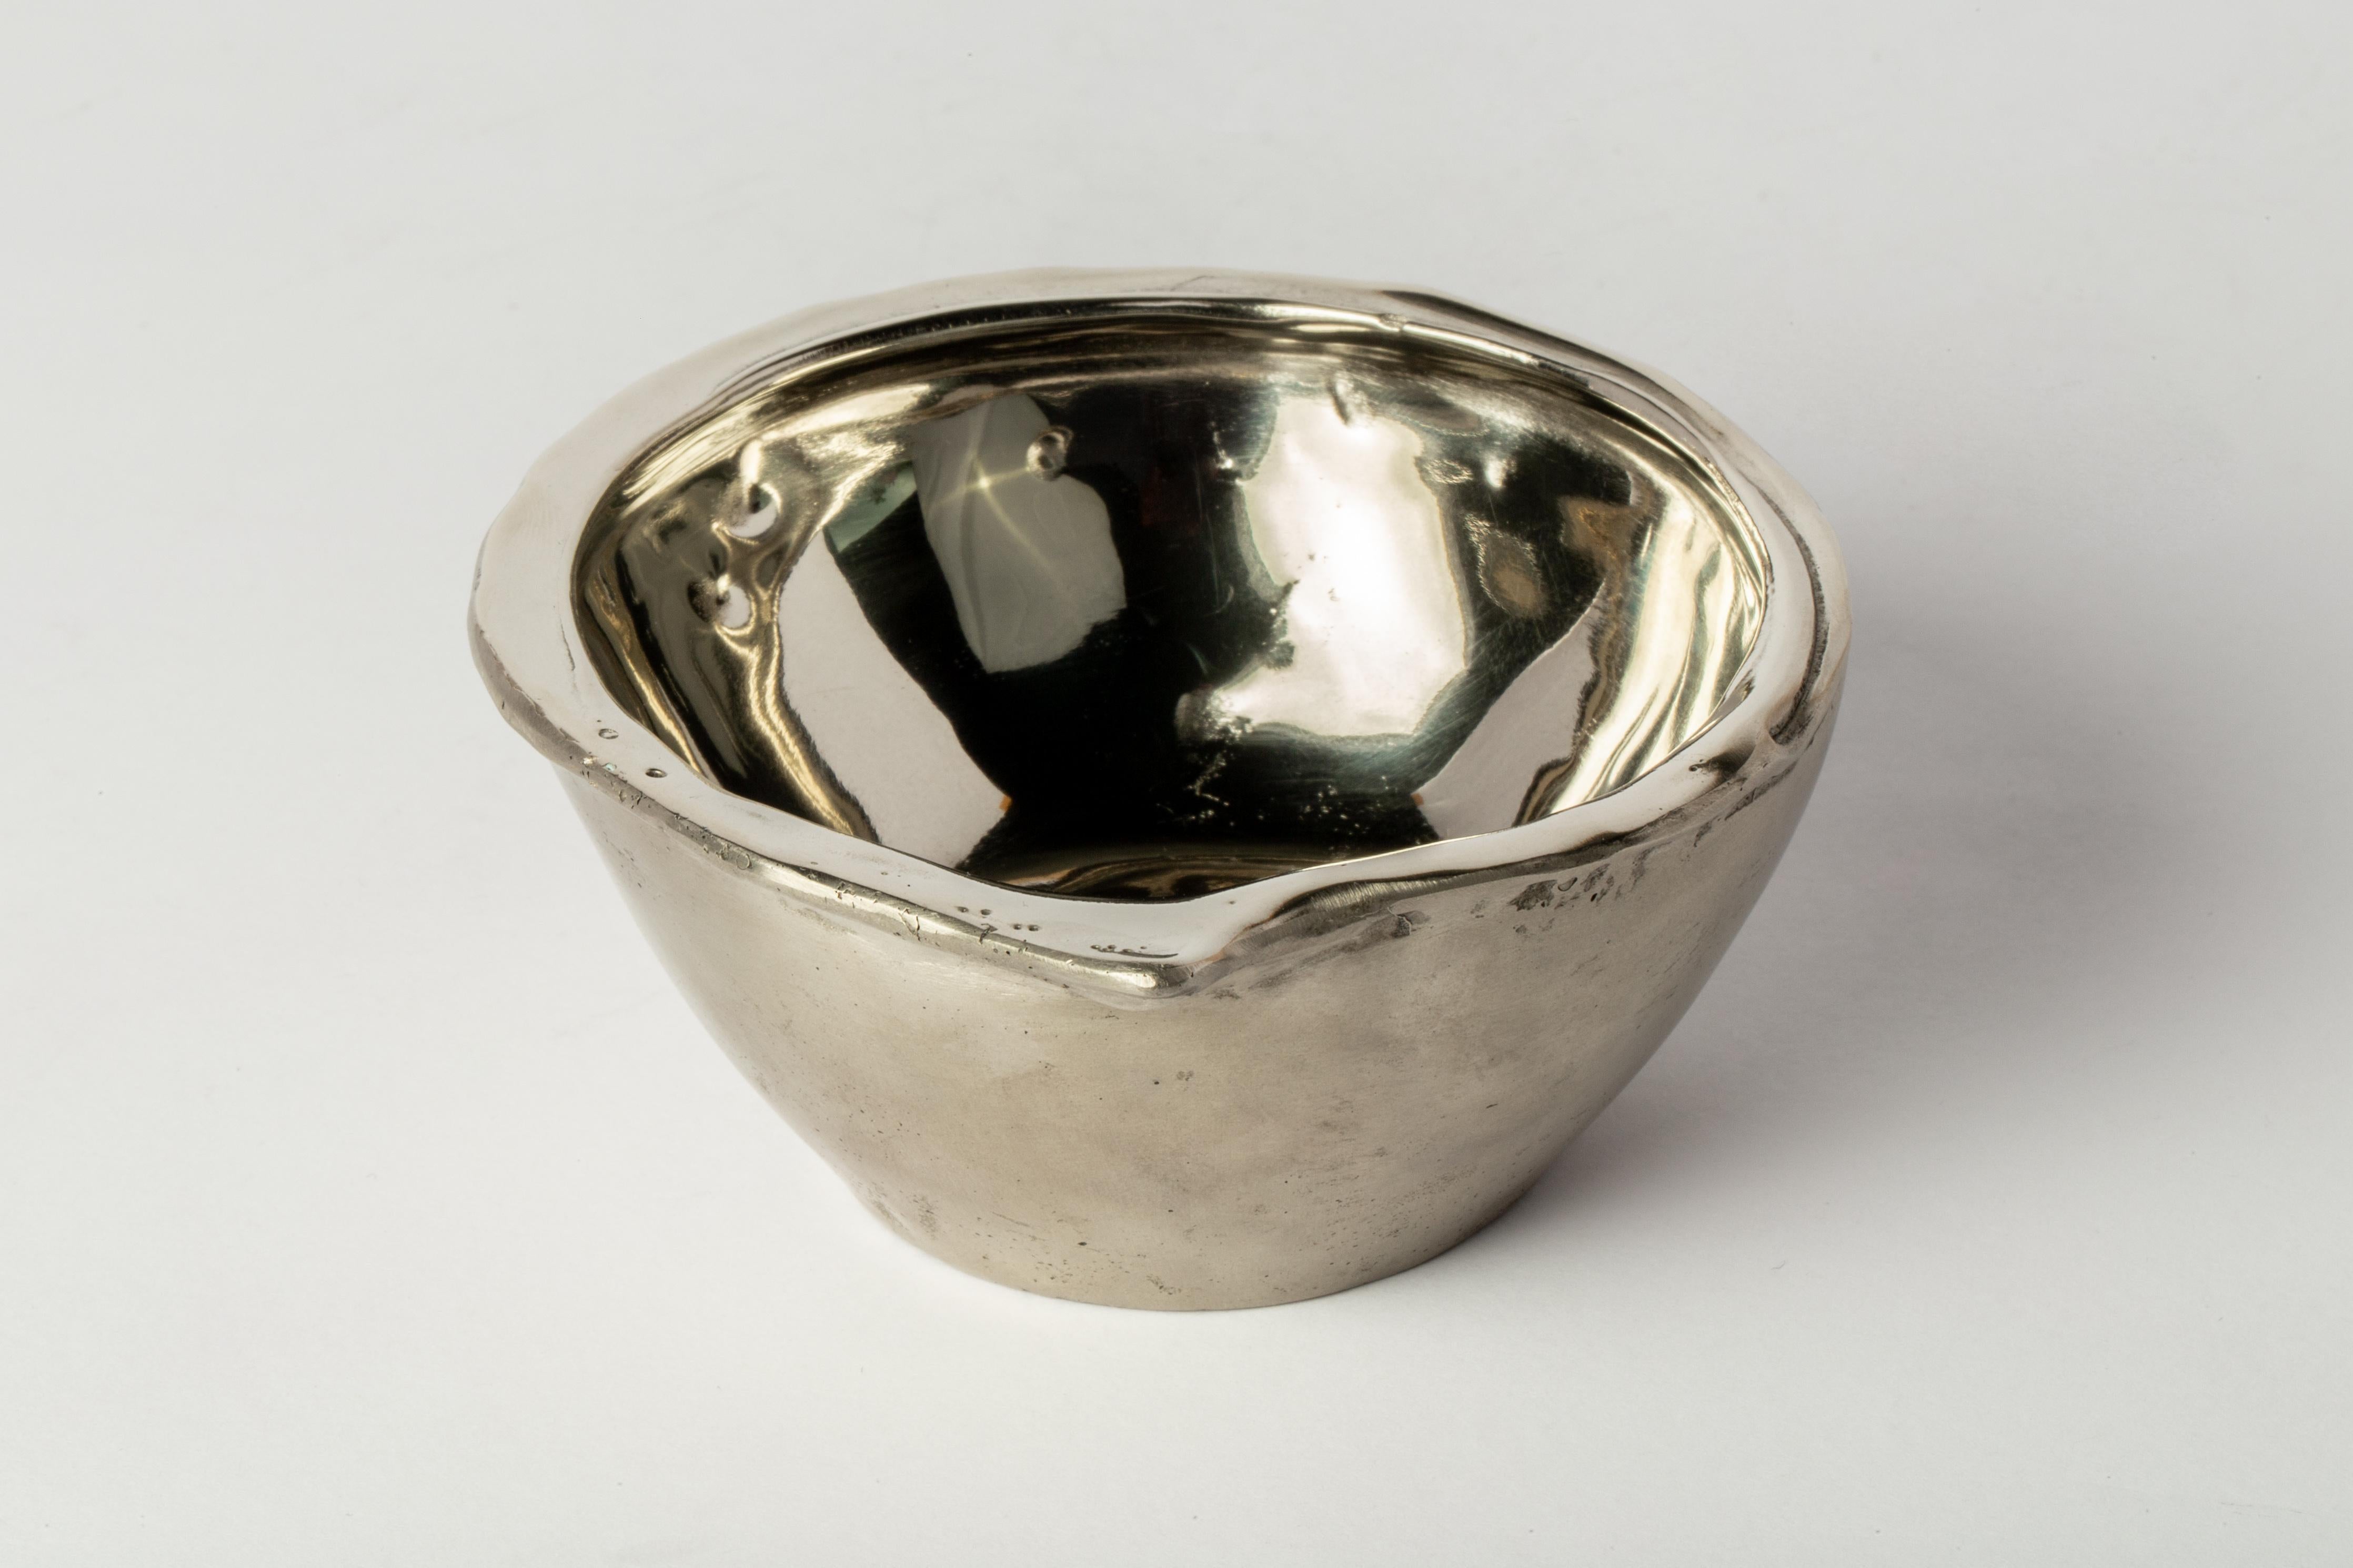 Le petit bol en bronze blanc, dont l'intérieur est poli jusqu'à atteindre un éclat brillant, est un mélange captivant d'élégance et d'artisanat. Sa surface intérieure épurée et réfléchissante dégage un charme intemporel et sophistiqué, ce qui en